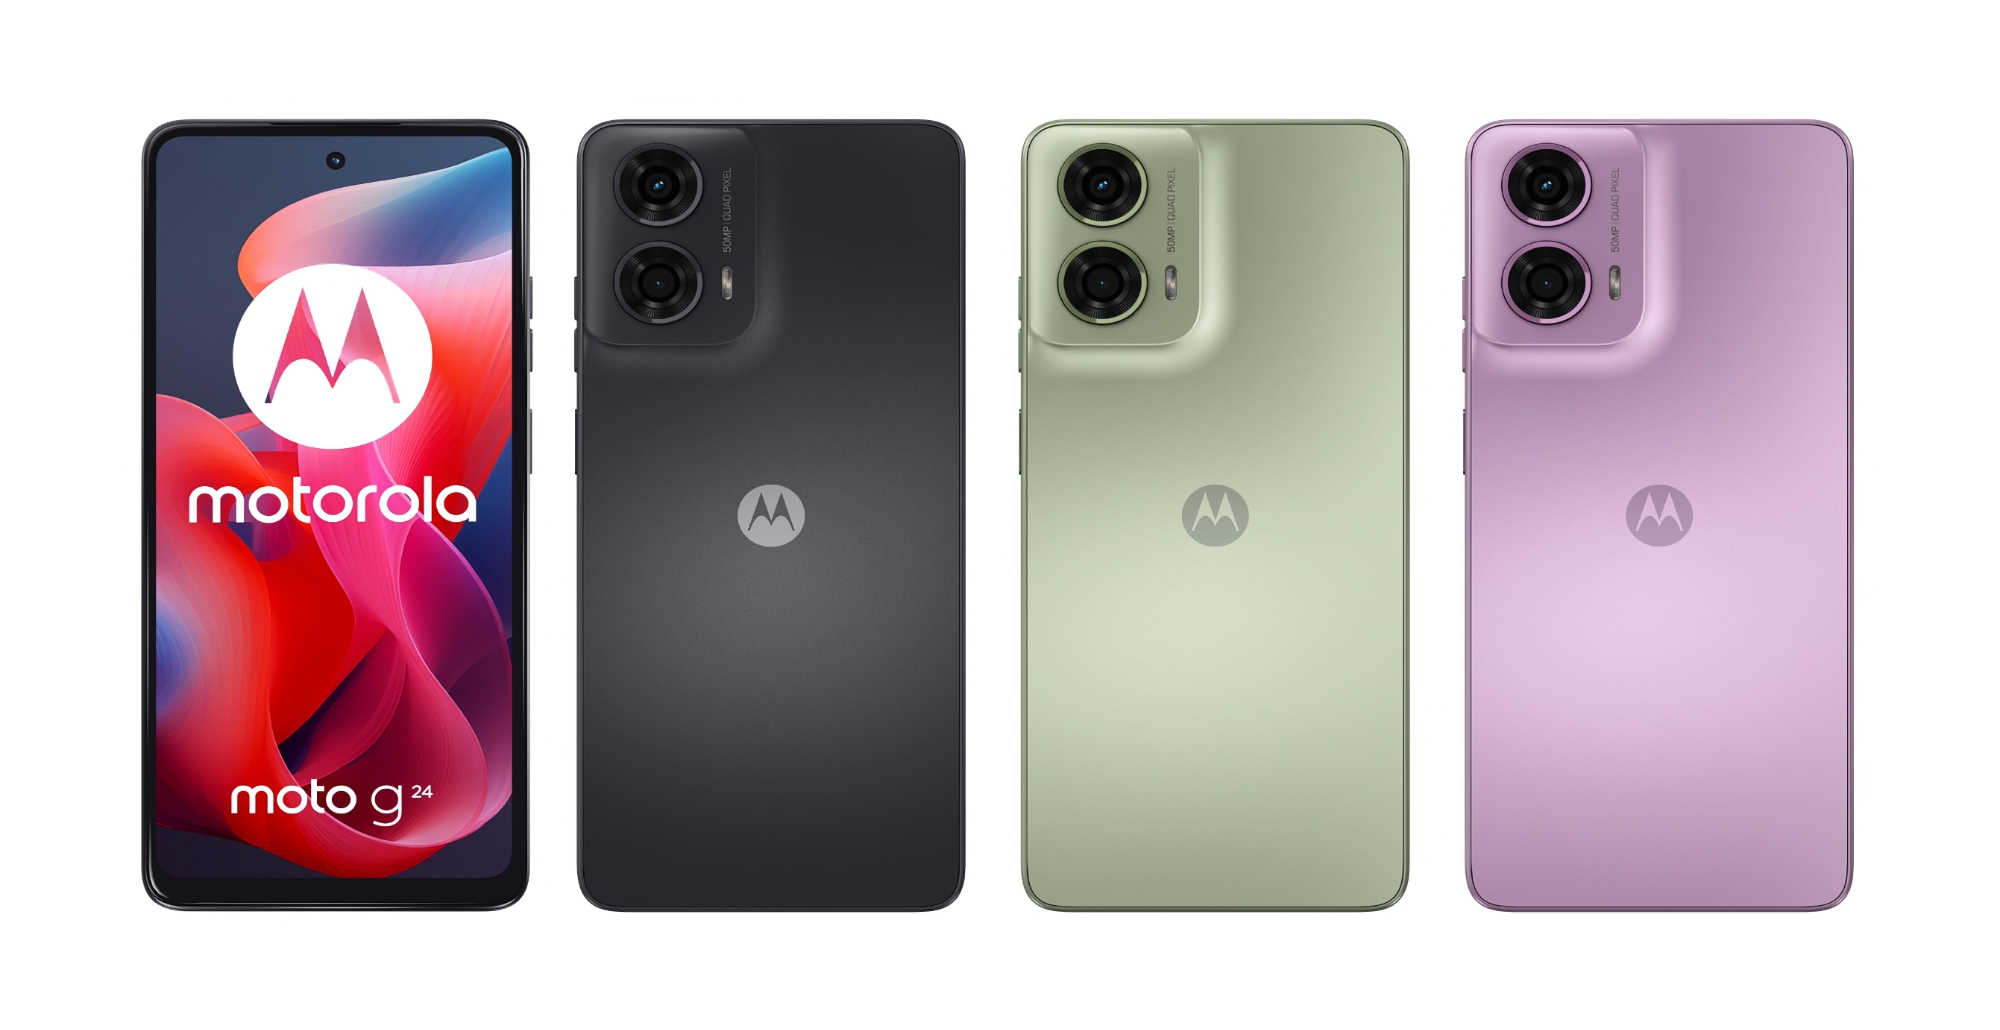 Ecco come sarà il Moto G24: Il nuovo smartphone economico di Motorola con un display a 90Hz e un chip MediaTek Helio G85